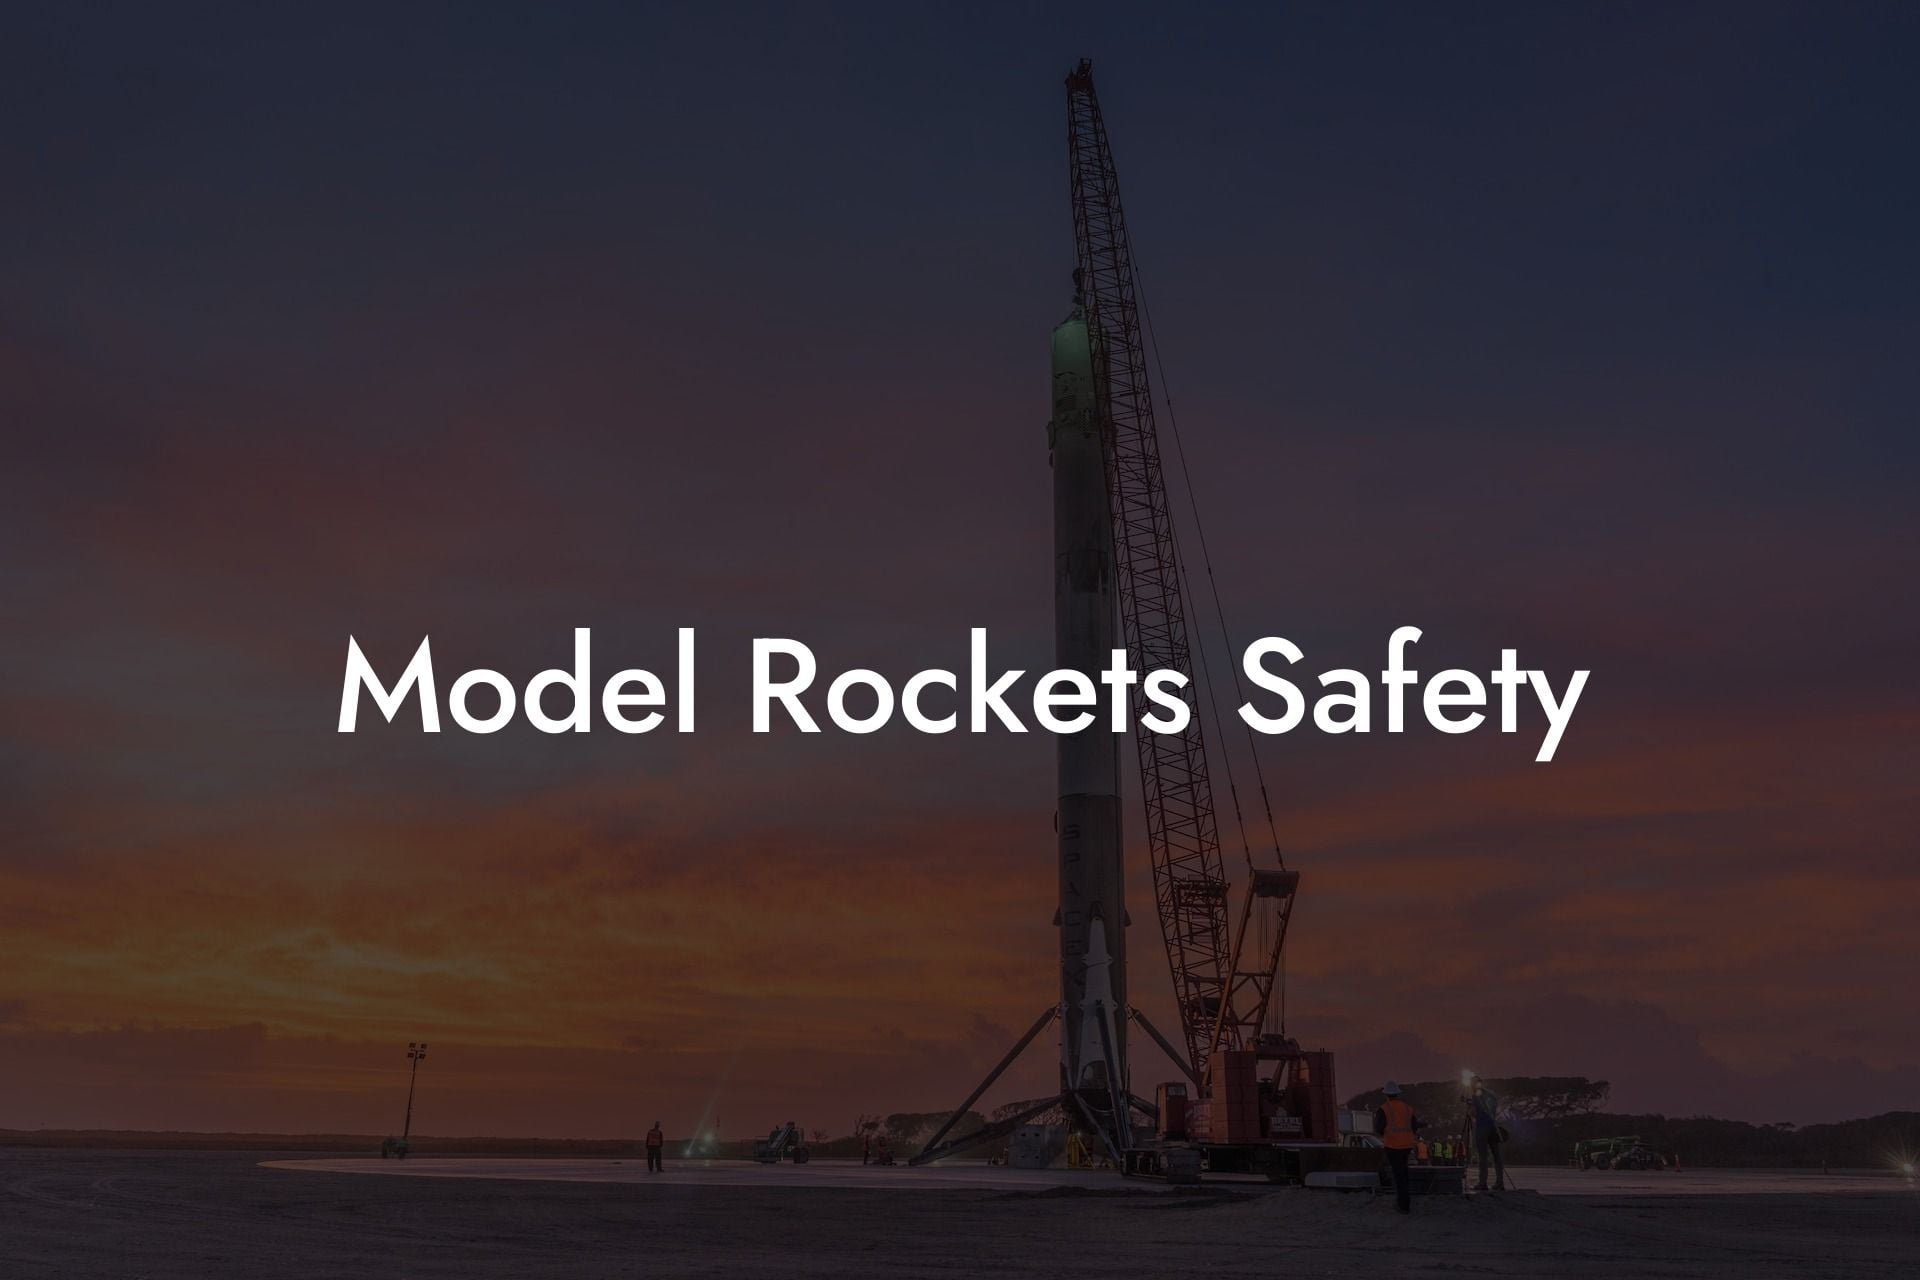 Model Rockets Safety